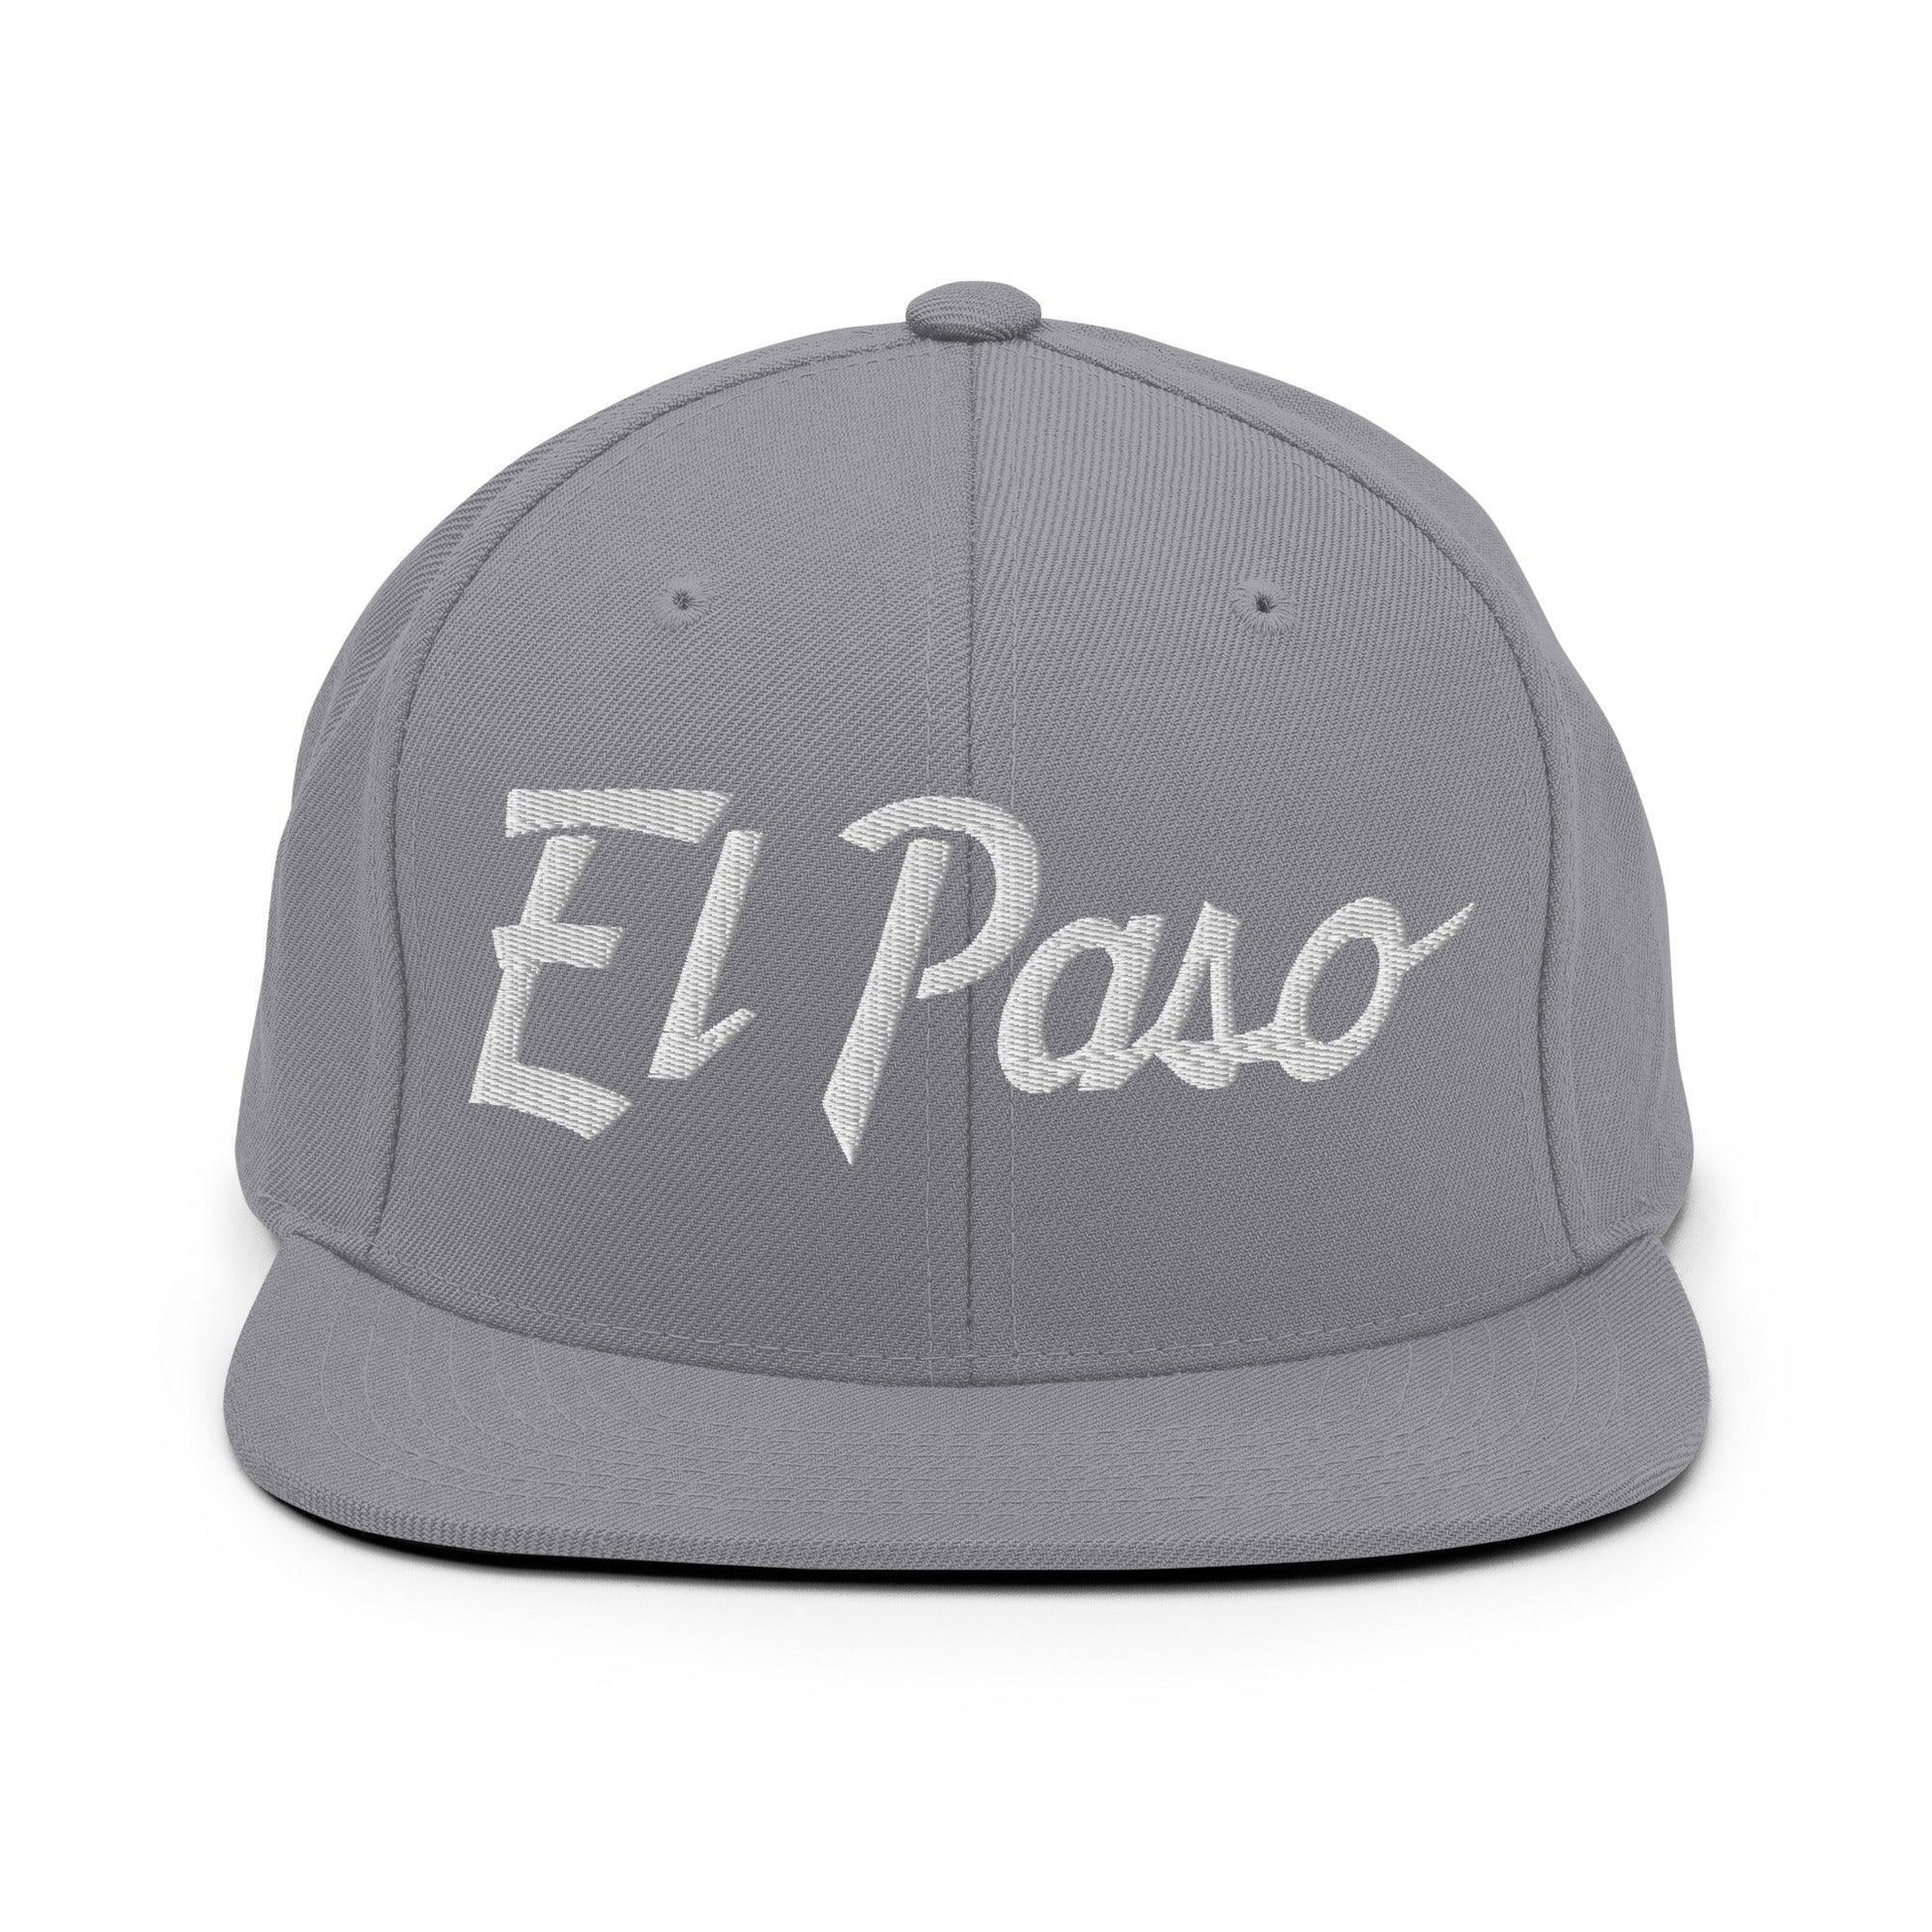 El Paso Script Snapback Hat Silver